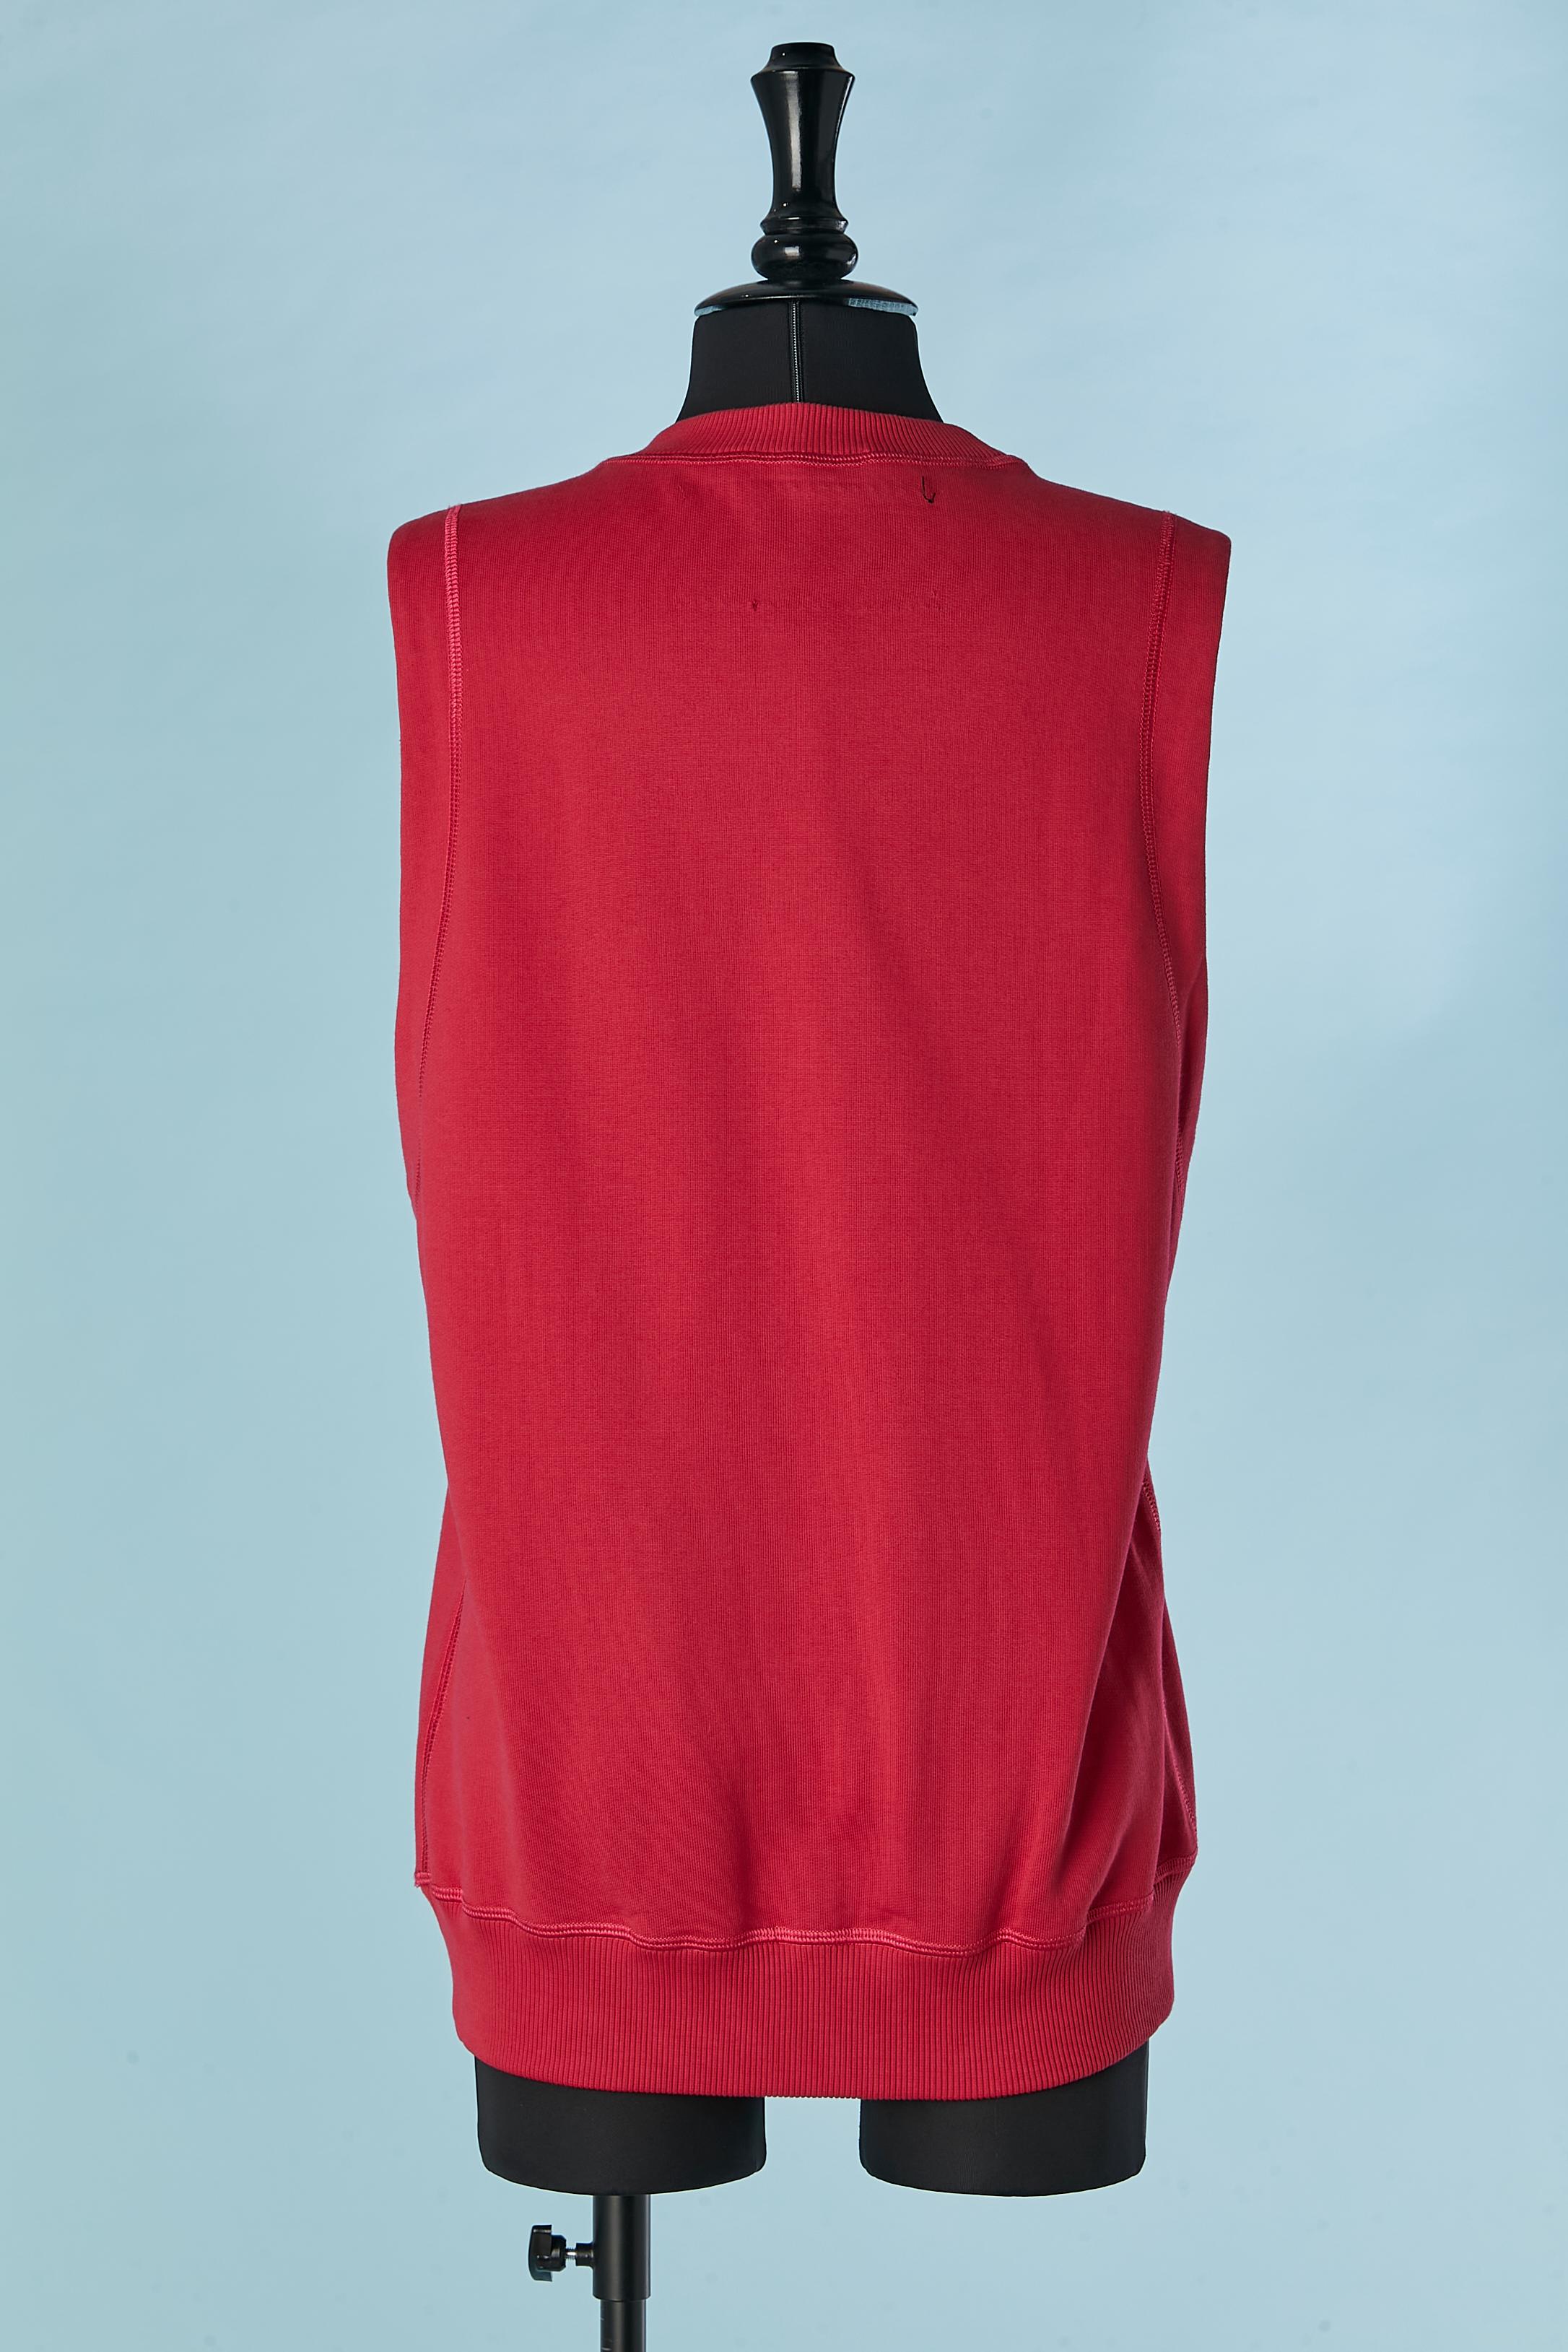 Women's or Men's Red sleeveless 